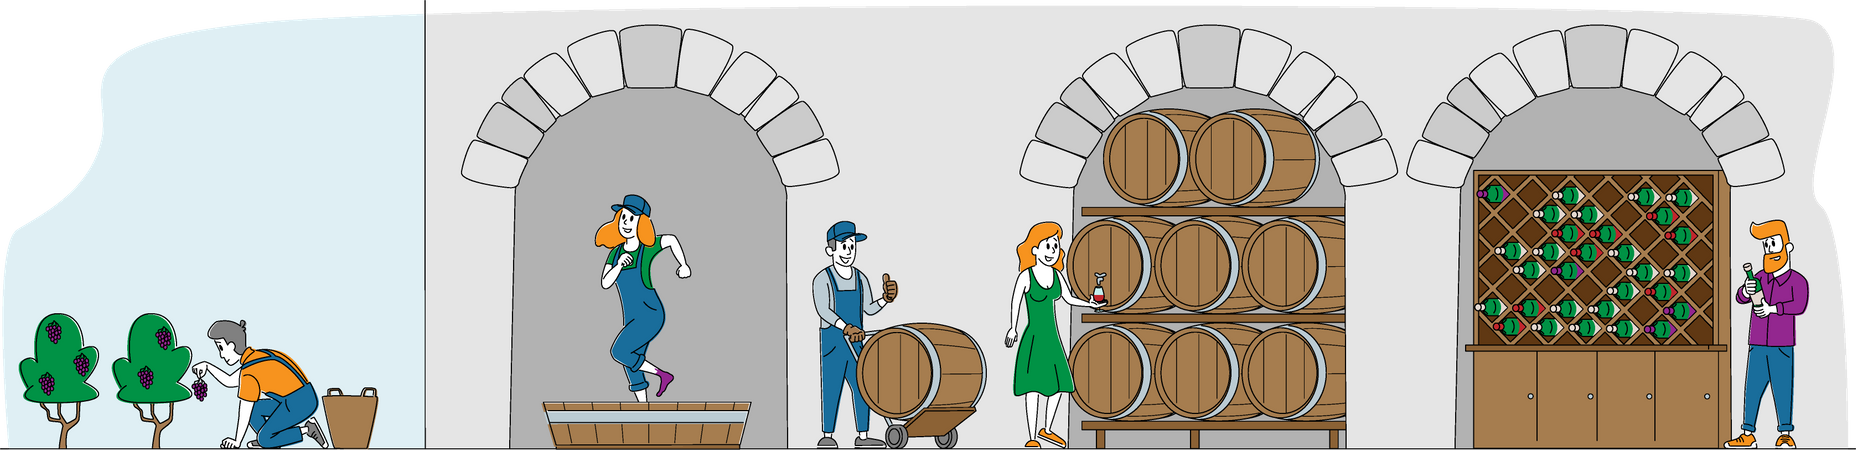 Production de vin et consommation de vin  Illustration